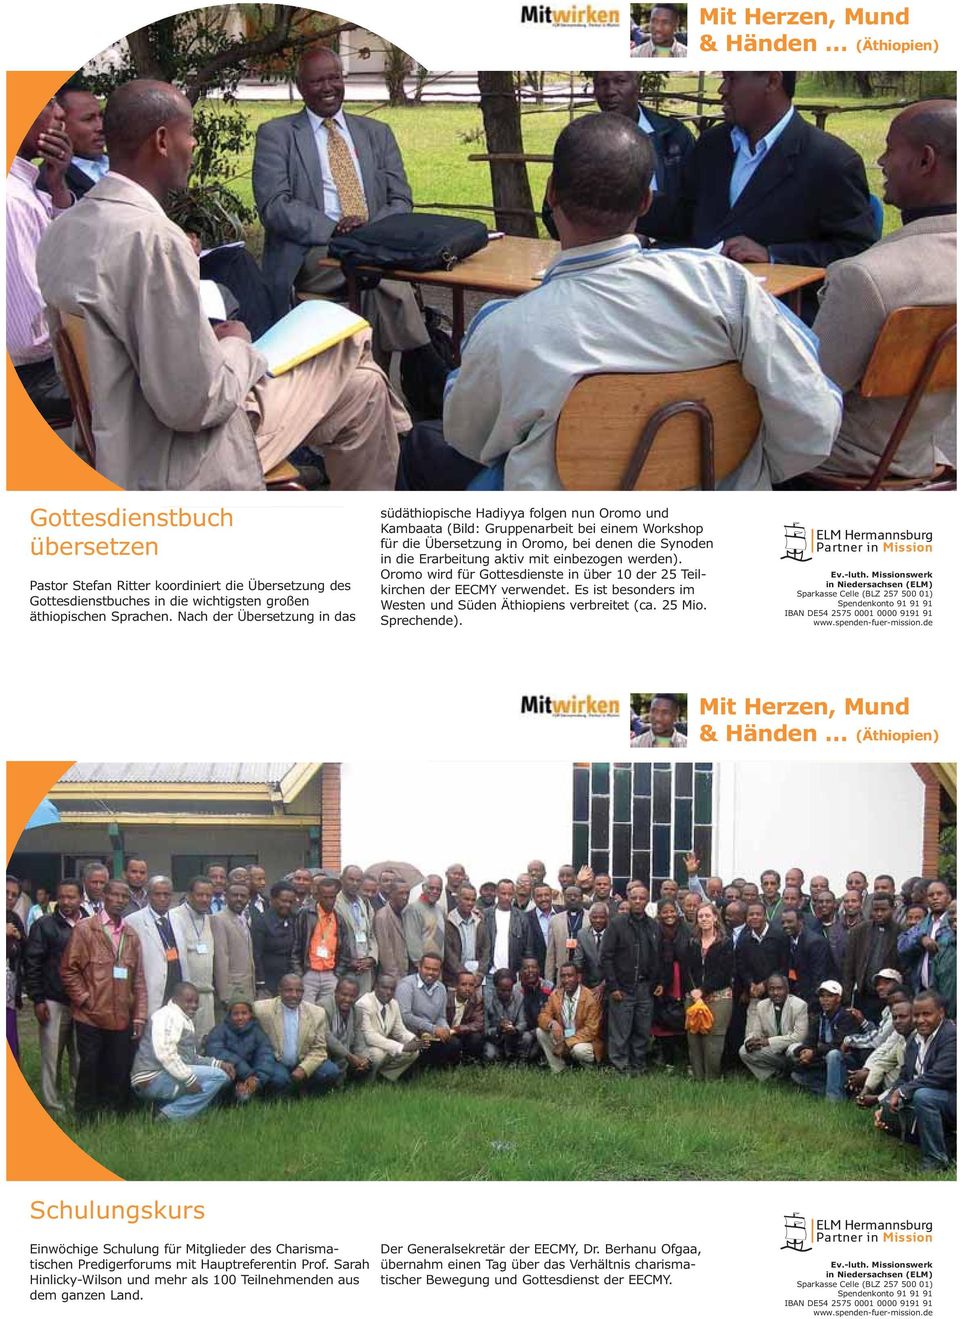 mit einbezogen werden). Oromo wird für Gottesdienste in über 10 der 25 Teilkirchen der EECMY verwendet. Es ist besonders im Westen und Süden Äthiopiens verbreitet (ca. 25 Mio. Sprechende).